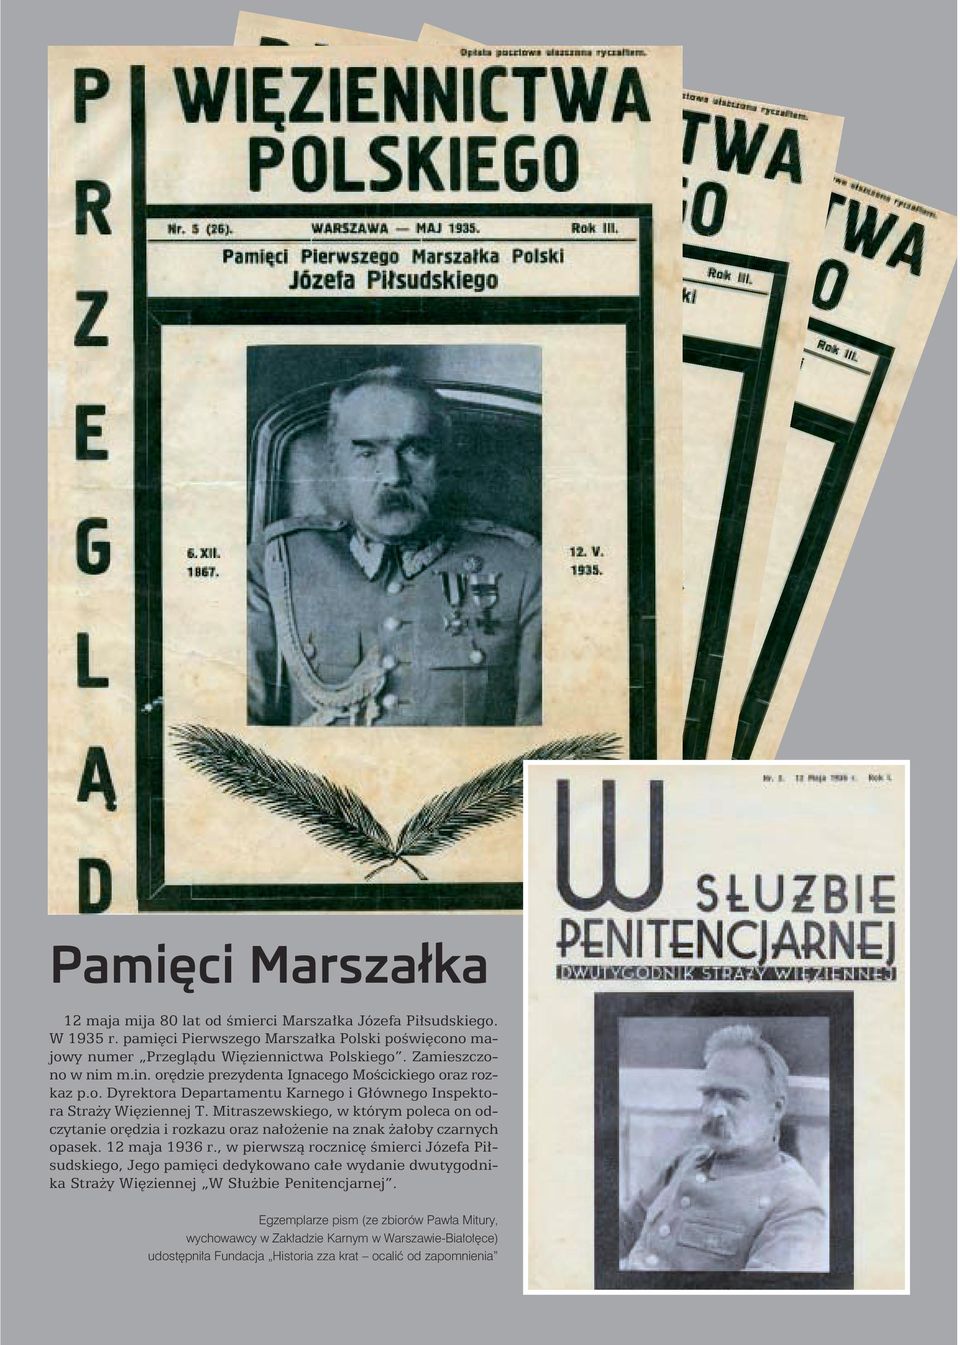 Mitraszewskiego, w którym poleca on odczytanie orędzia i rozkazu oraz nałożenie na znak żałoby czarnych opasek. 12 maja 1936 r.